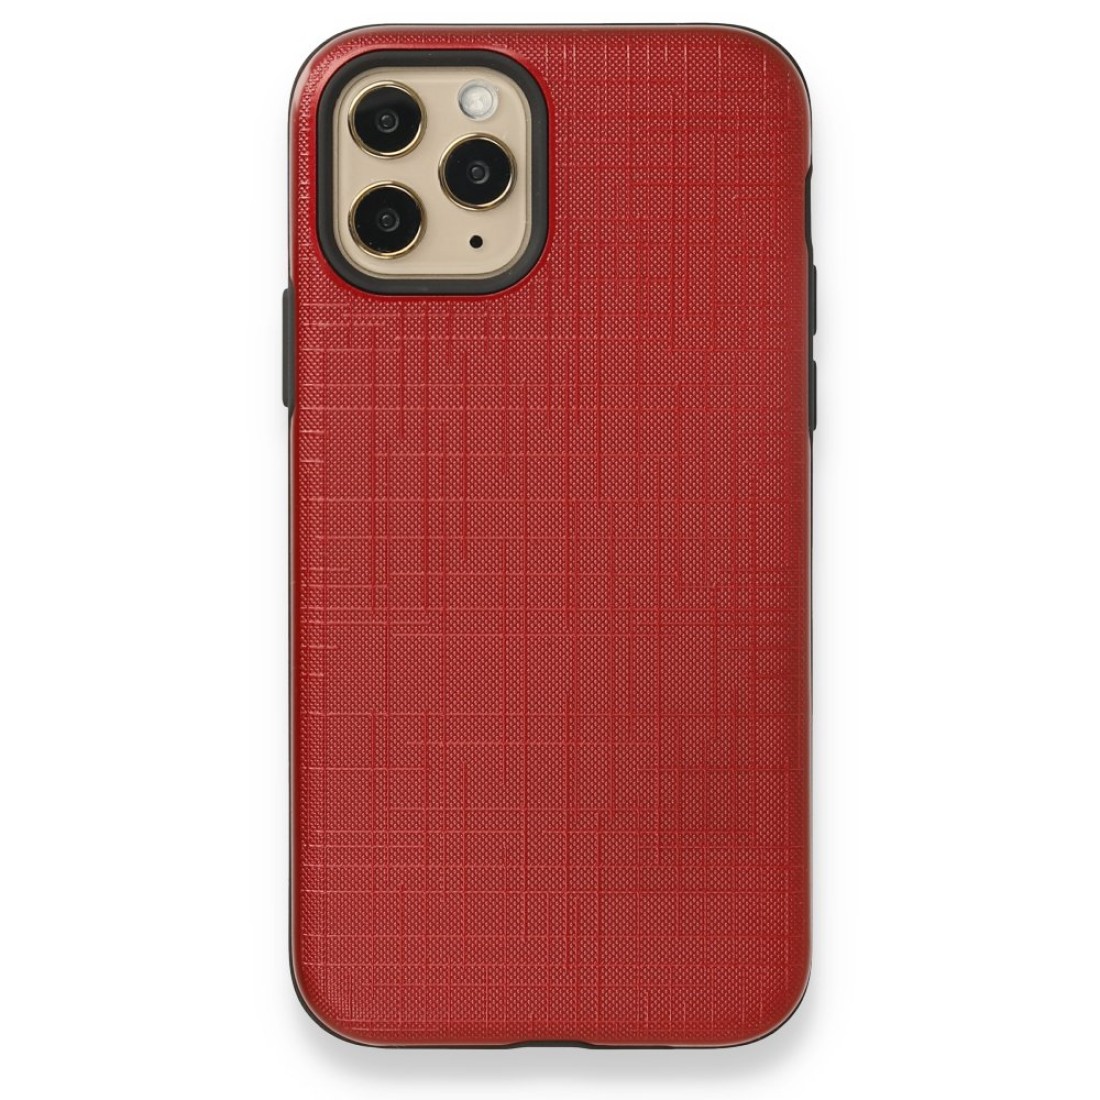 Apple iPhone 11 Pro Kılıf YouYou Silikon Kapak - Kırmızı